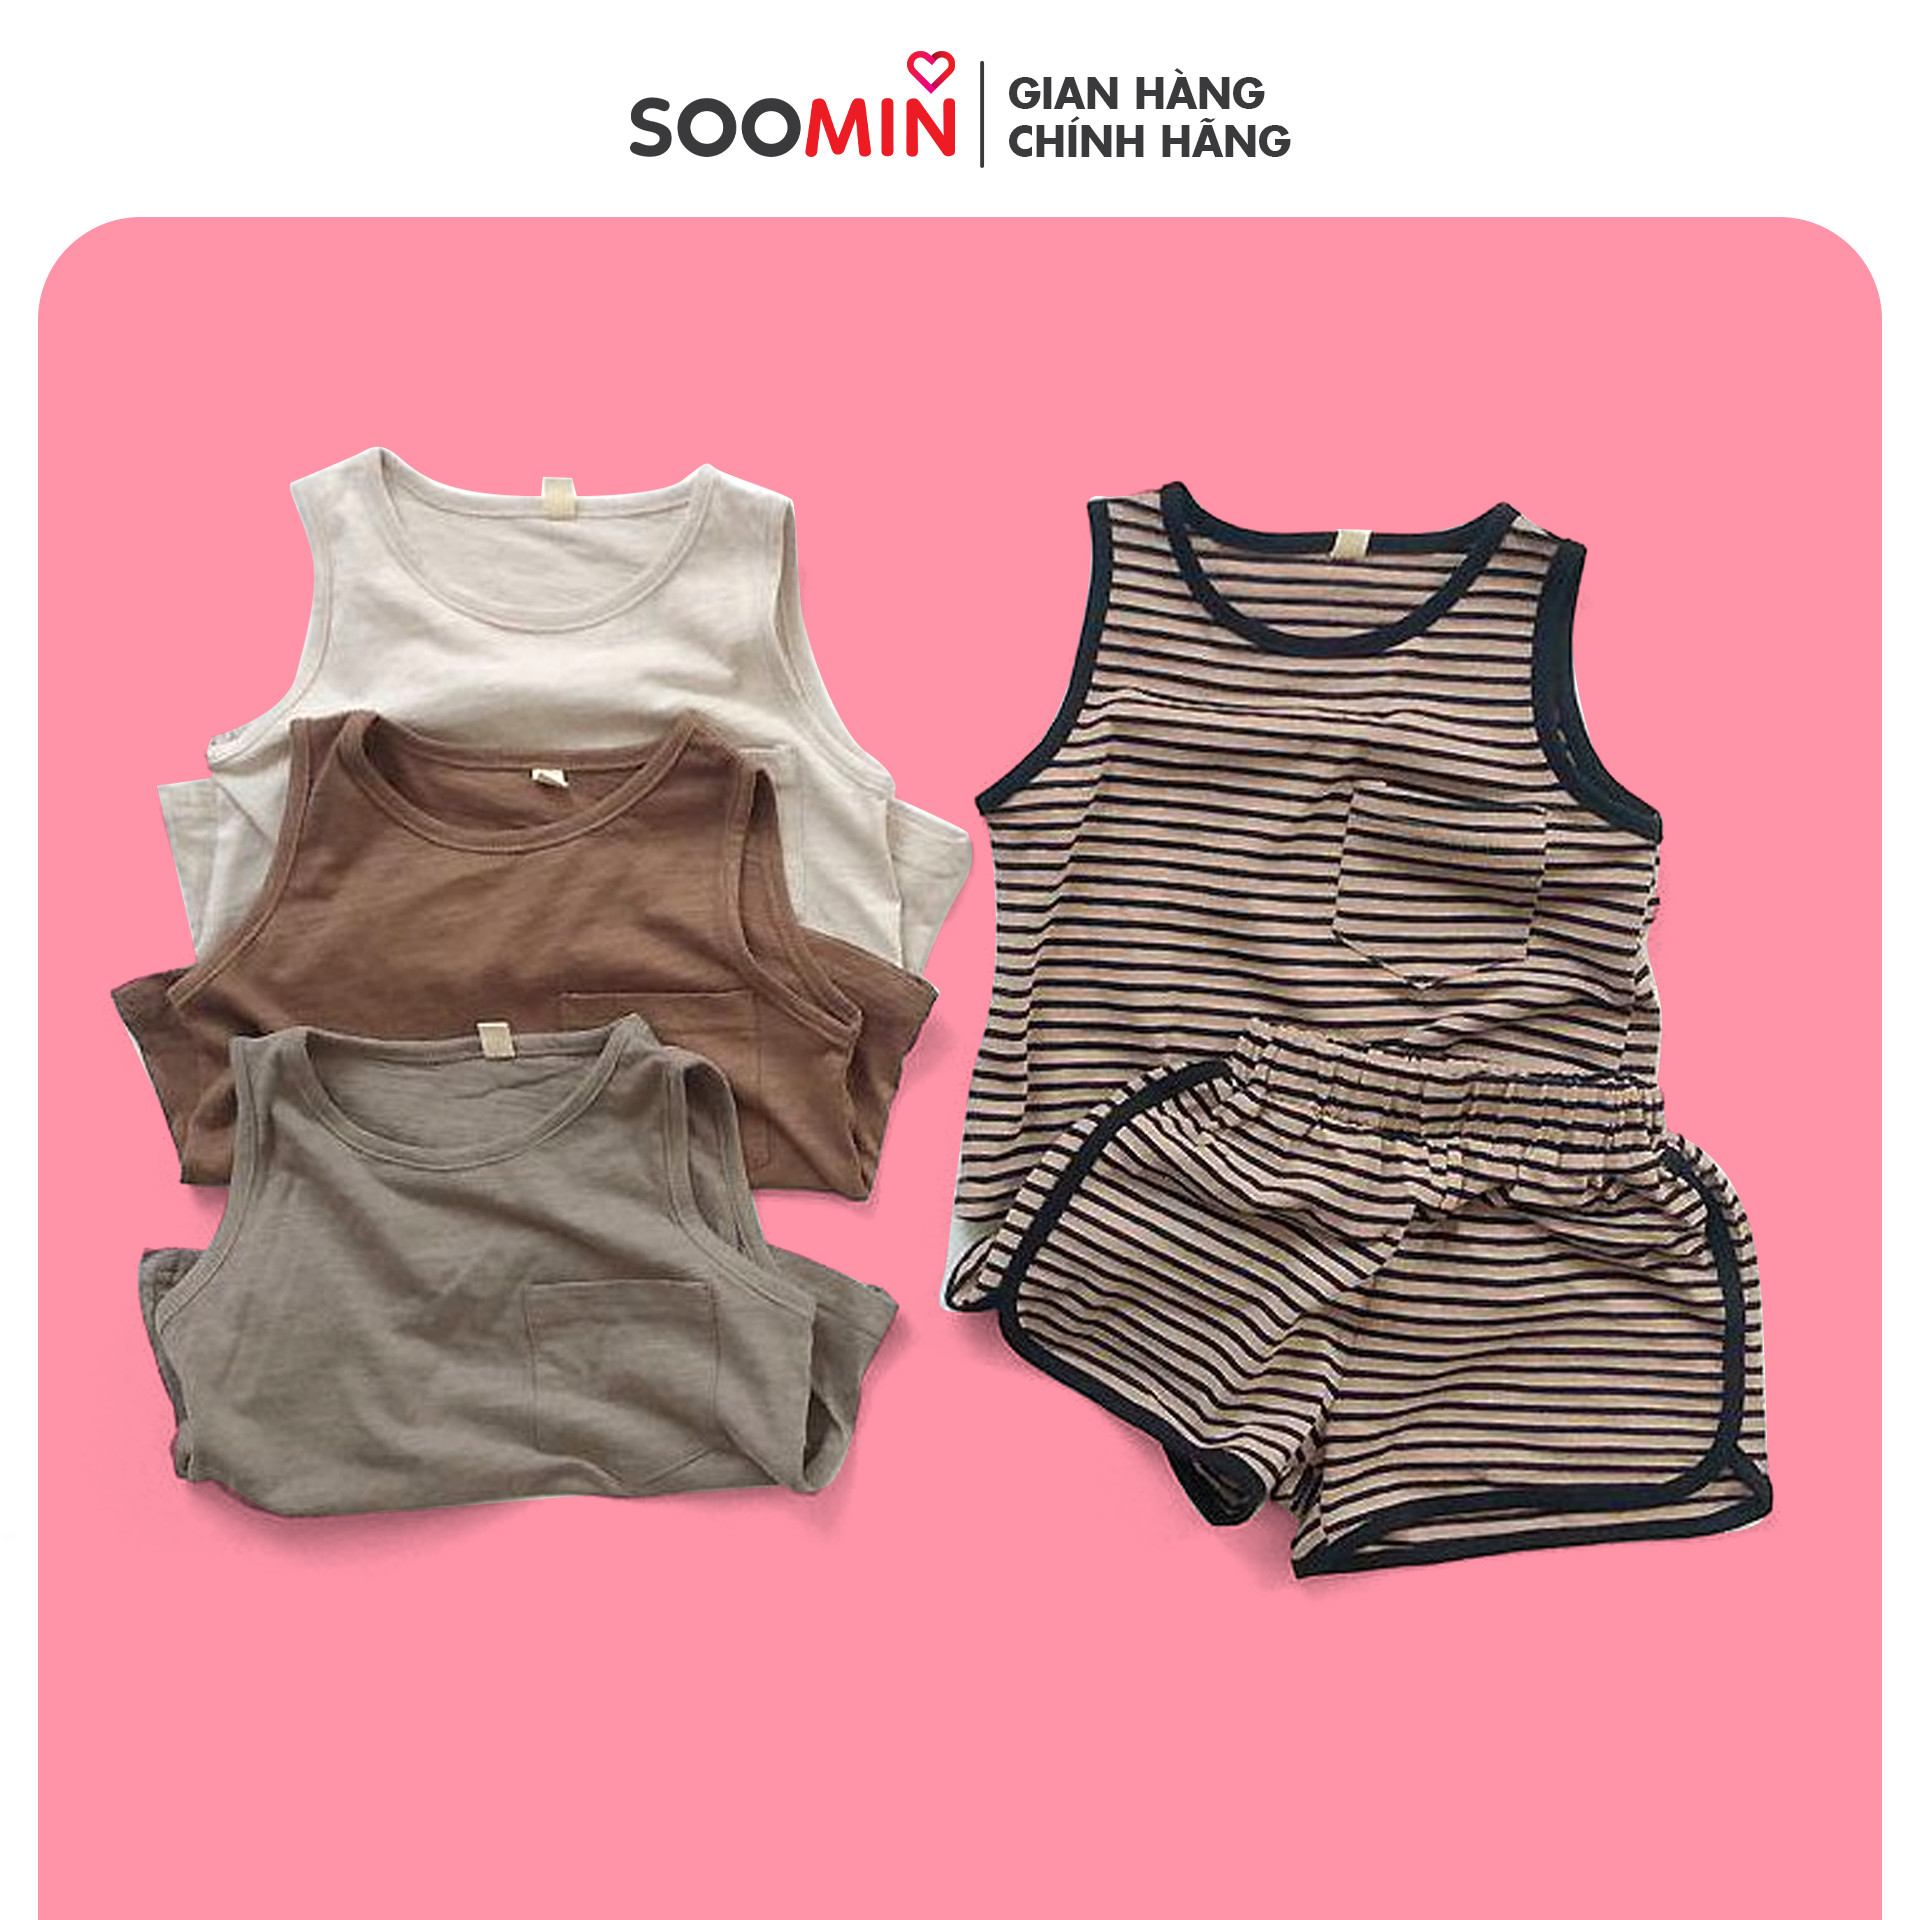 Đồ bộ , quần áo cho bé trai – gái , body từ 0-5 tuổi thương hiệu SOOMIN phong cách Hàn Quốc 3 màu , chất liệu cotton 100% mềm mại an toàn cho bé